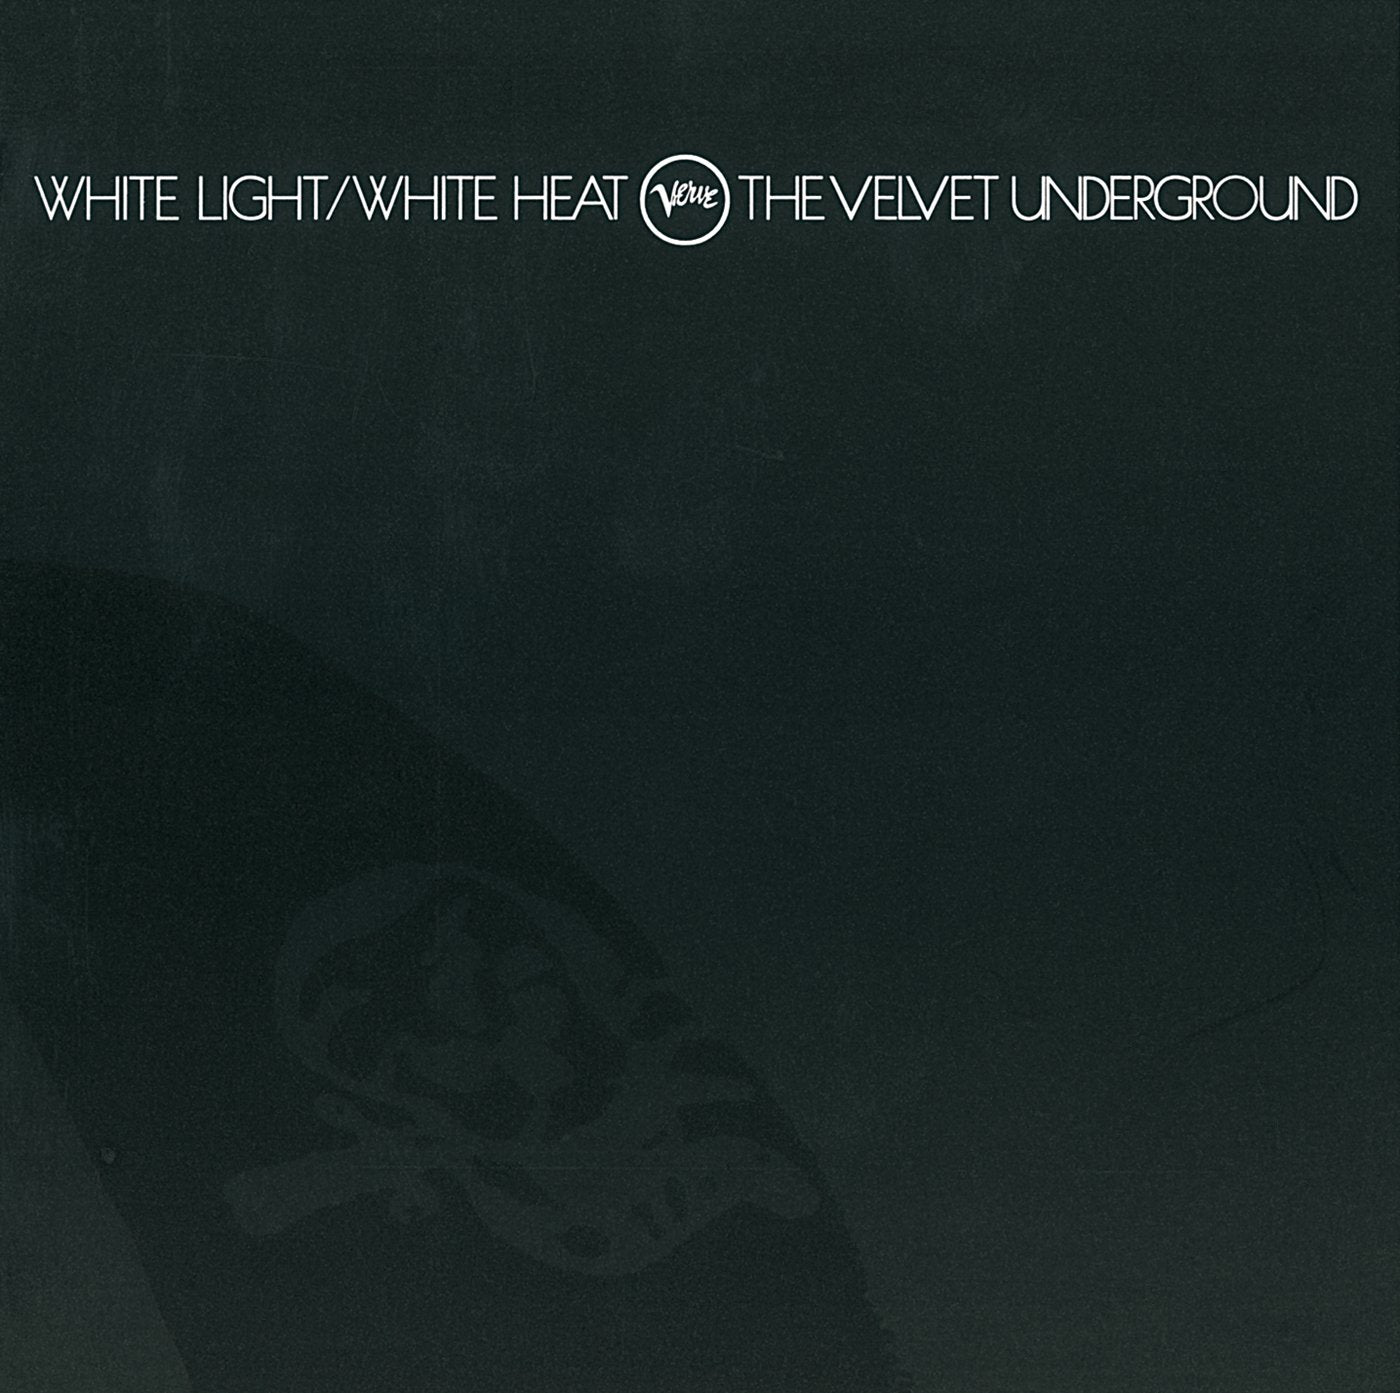 The Velvet Underground [Half-Speed Master LP]